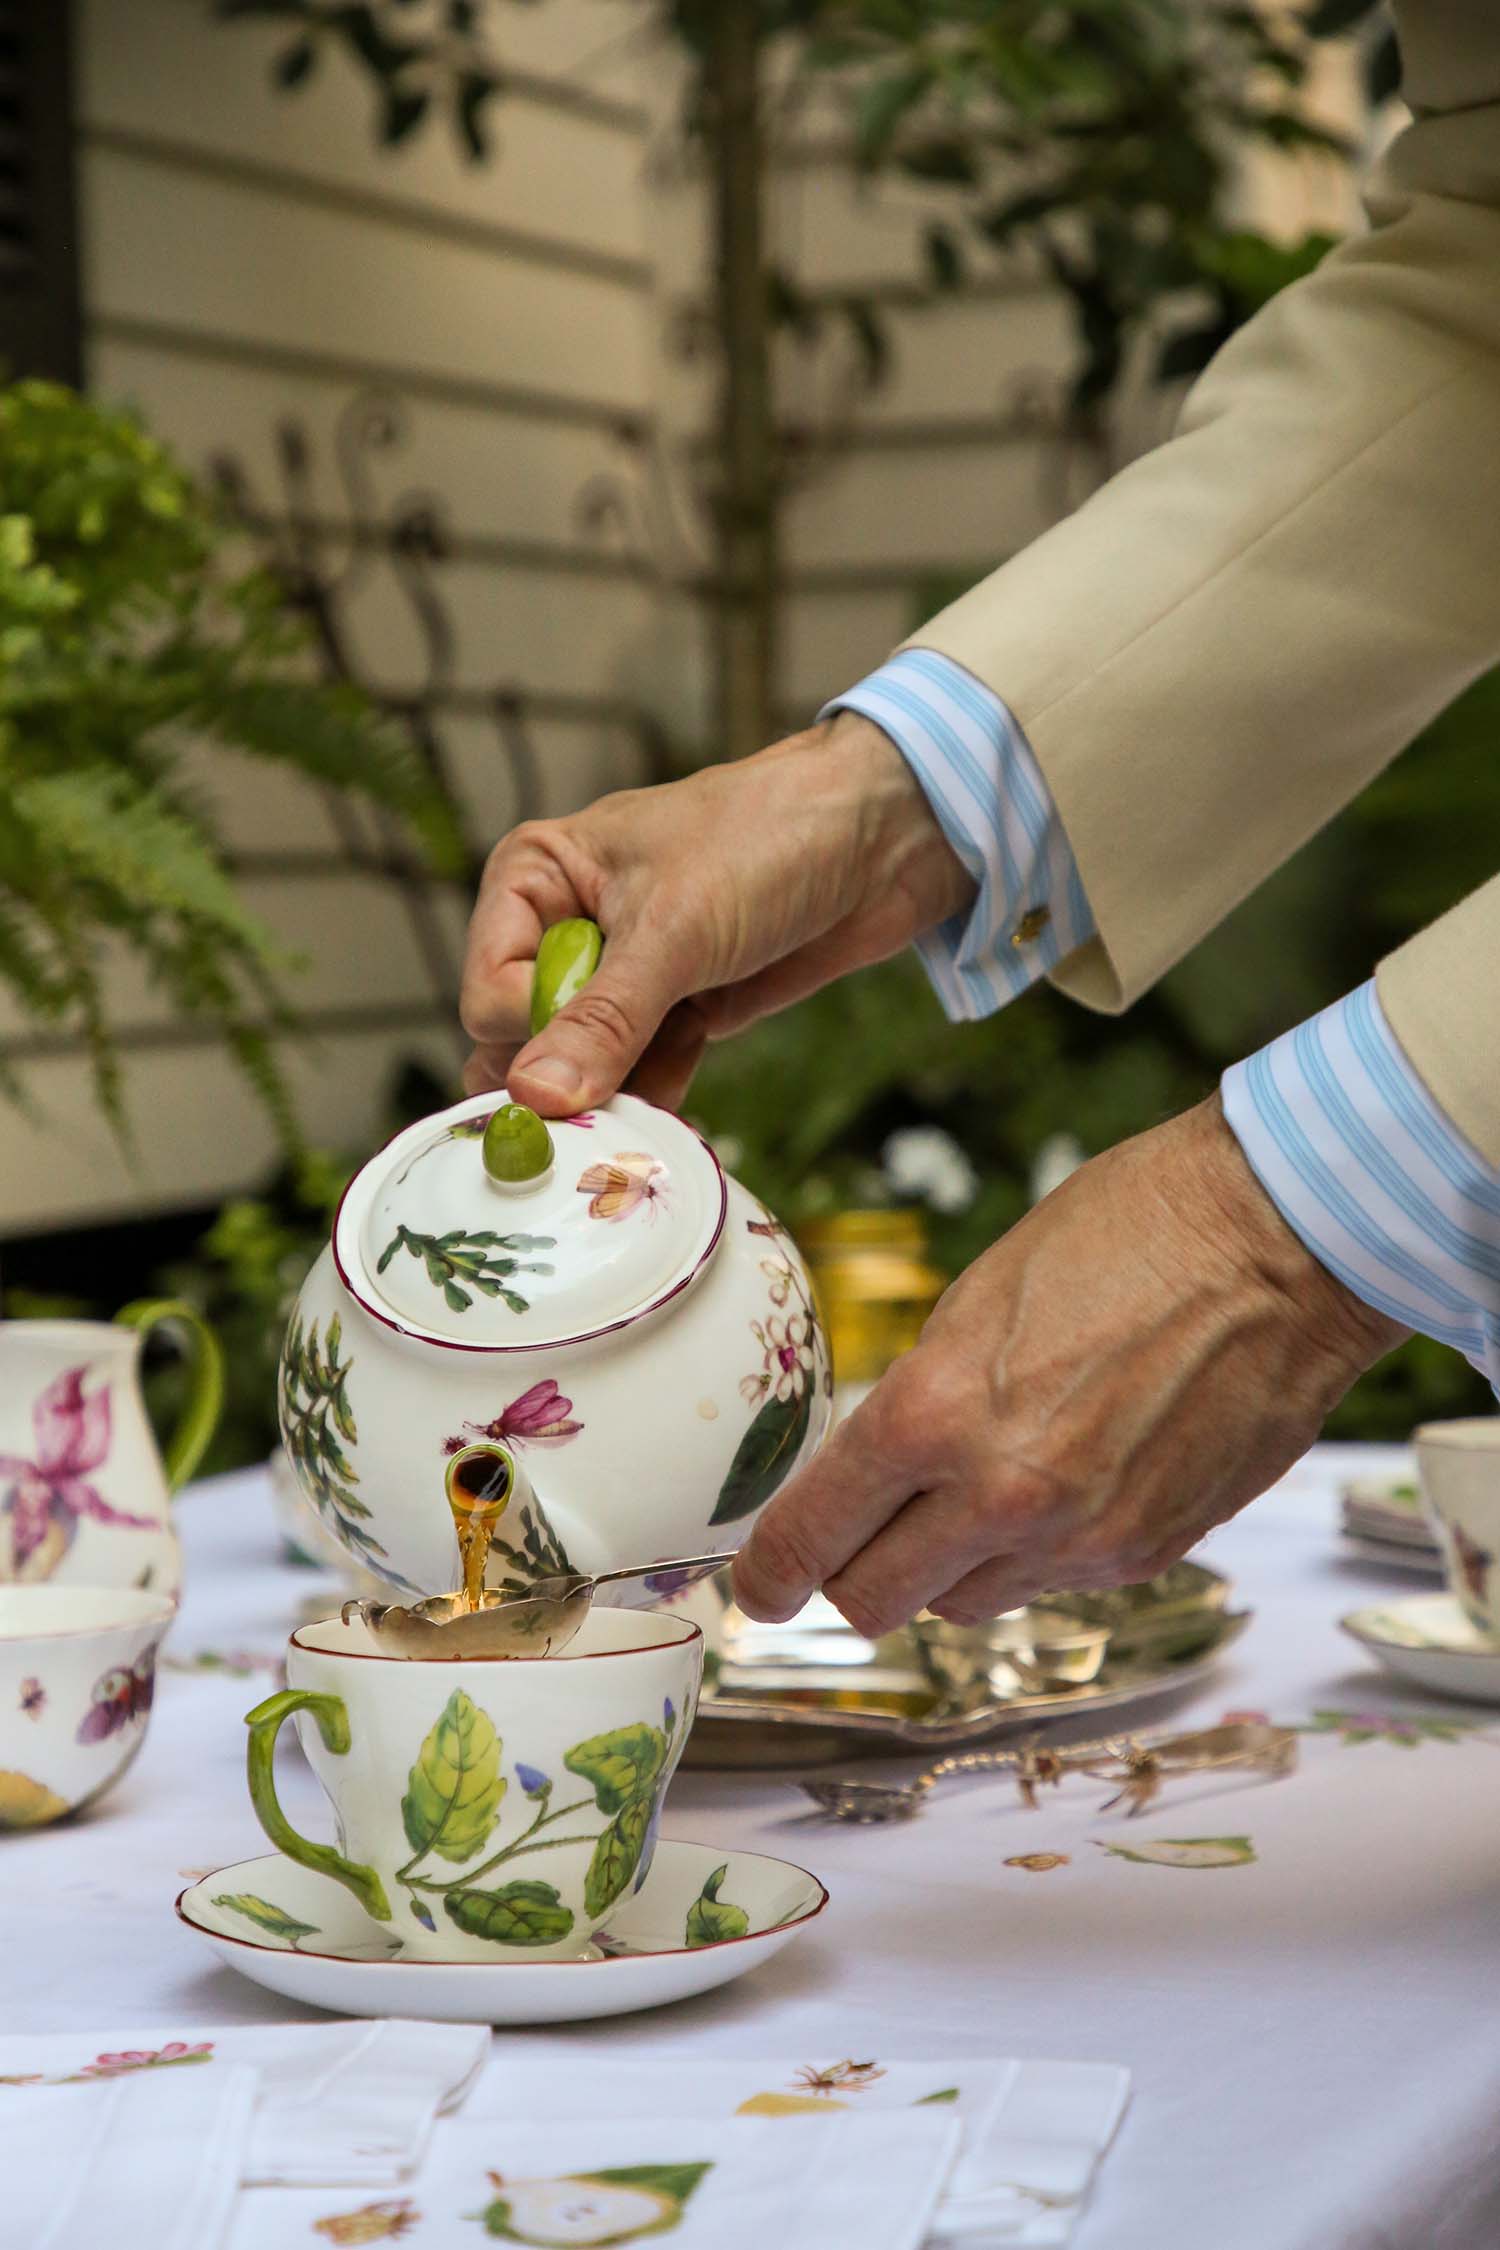 Hands pouring a floral ceramic teapot.